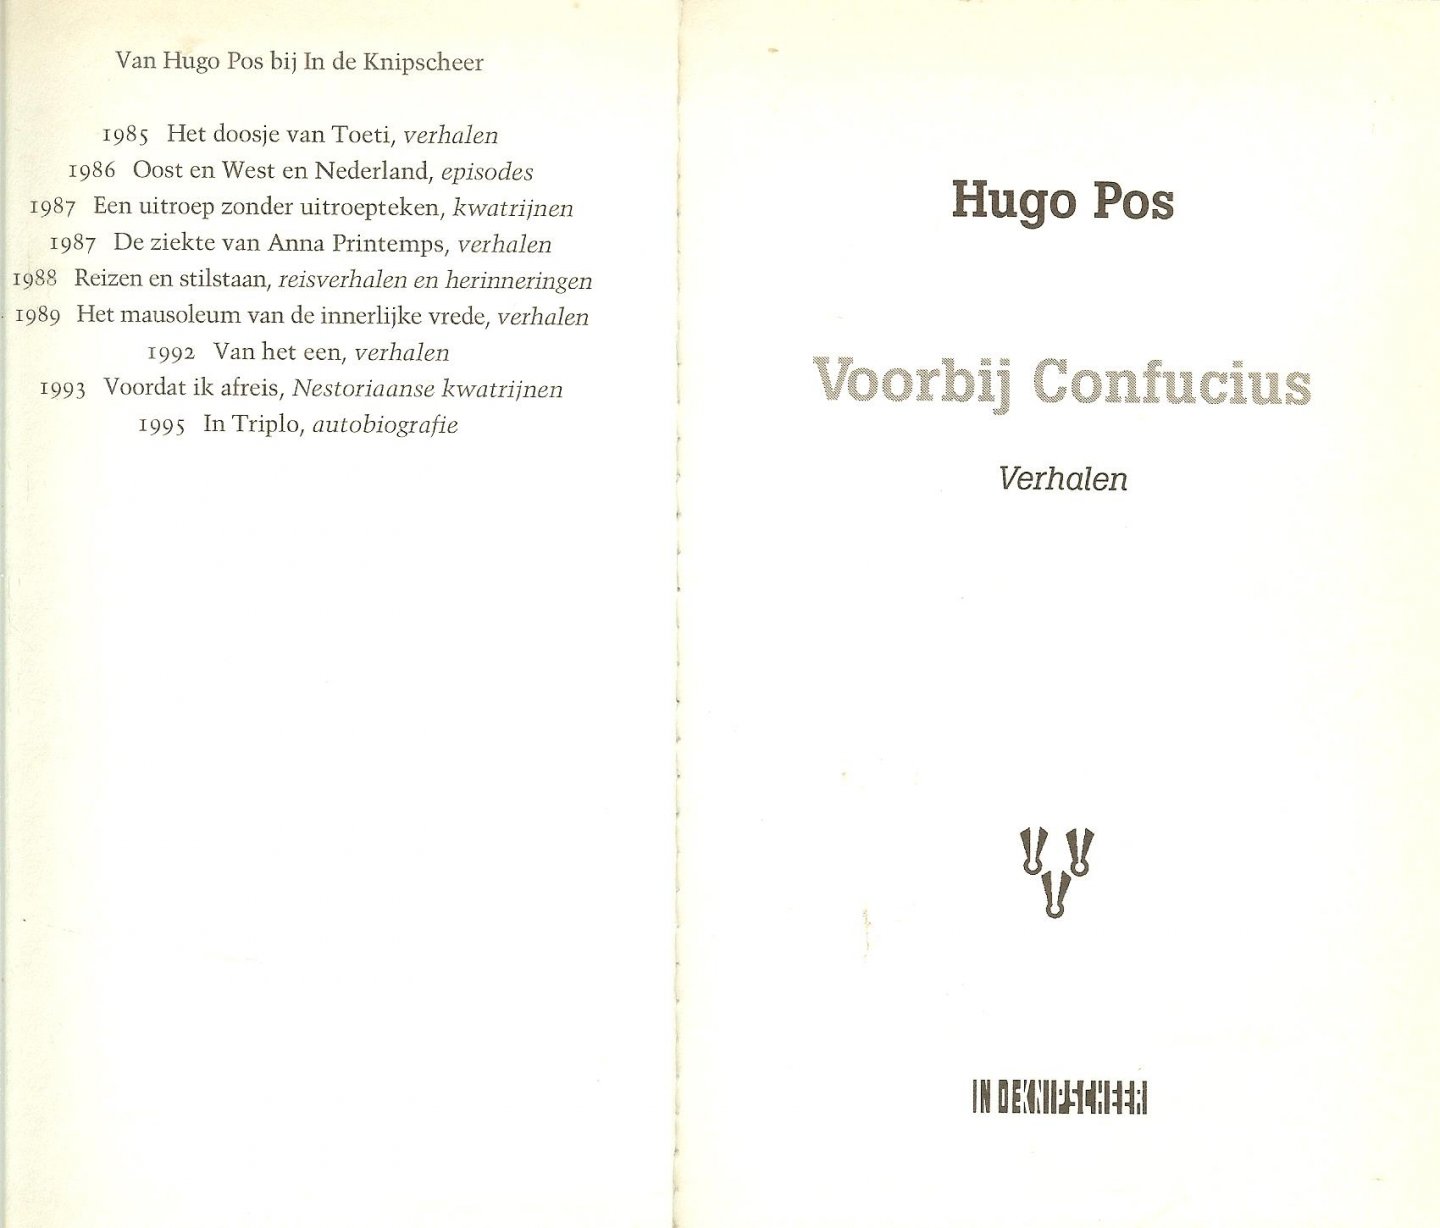 Hugo Pos (1913), voormalig rechter, schrijver sinds 1985 (hij publiceerde sindsdien tien boeken, waaronder 'Het doosje van Toeti' en 'In Triplo') - Voorbij Confucius